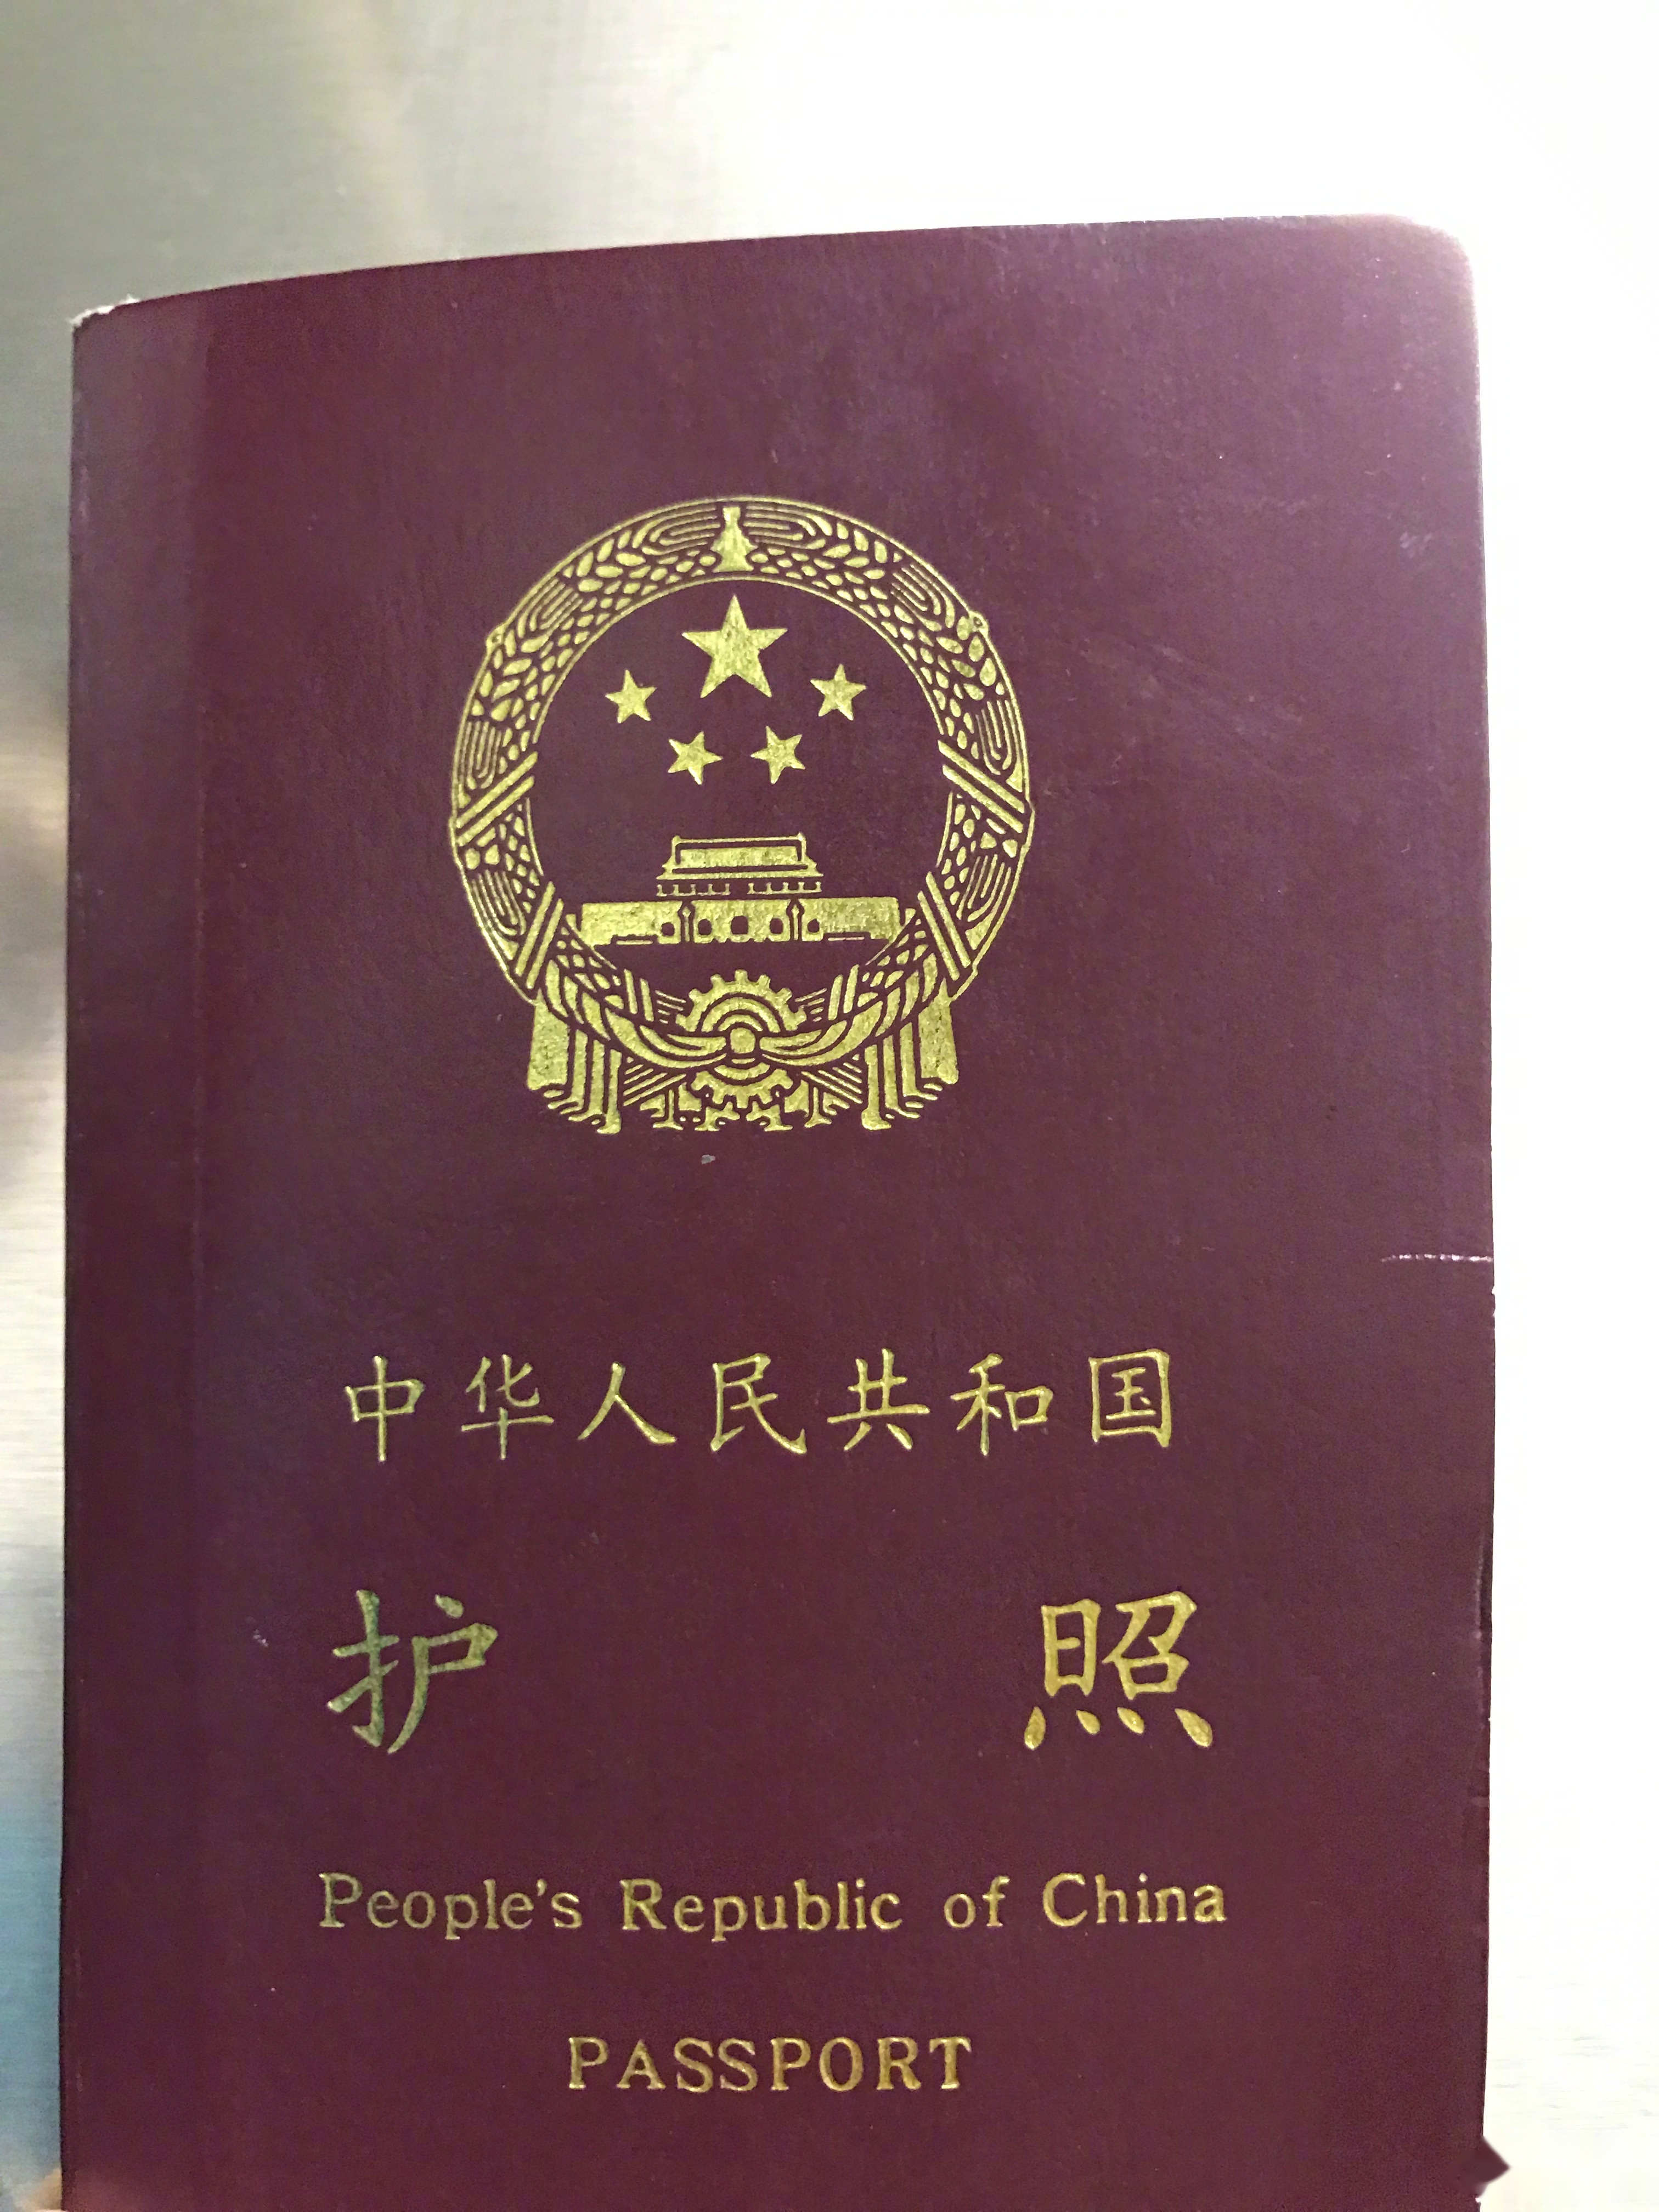 护照照片分辨率图片